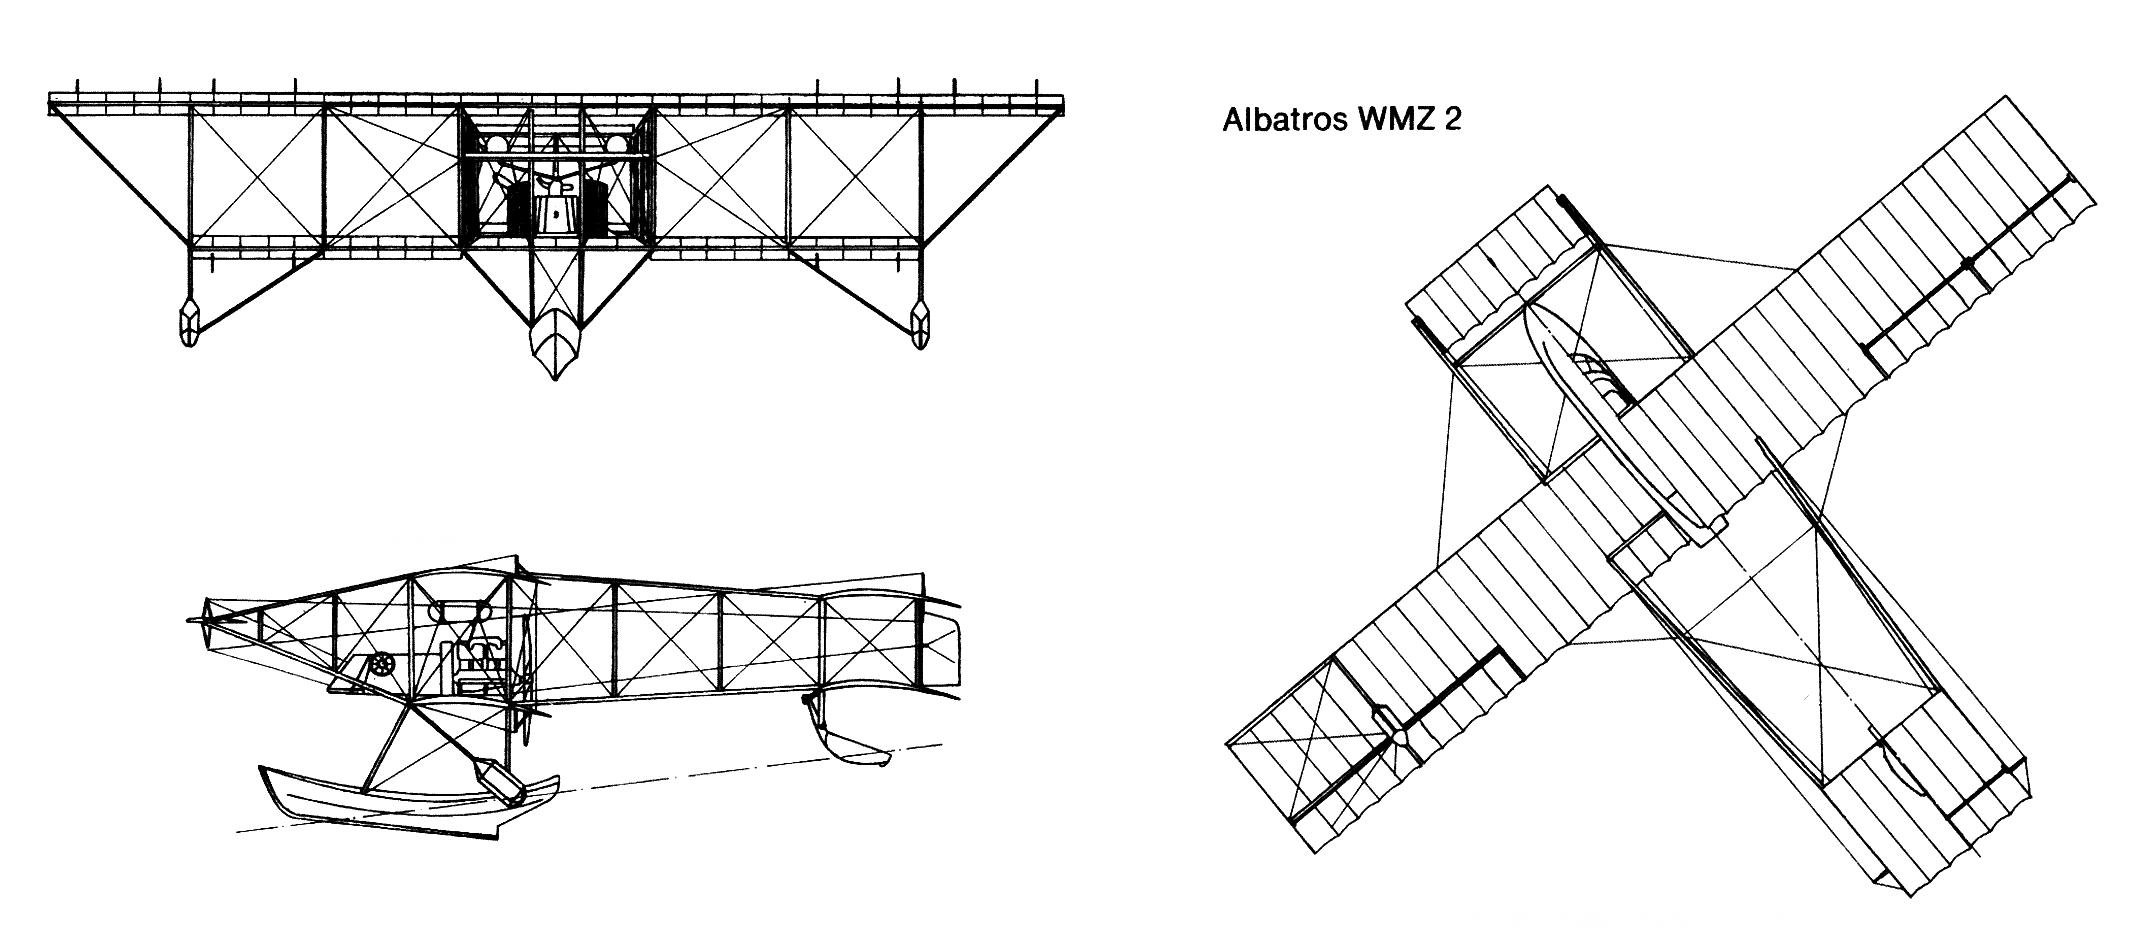 Albatros WMZ